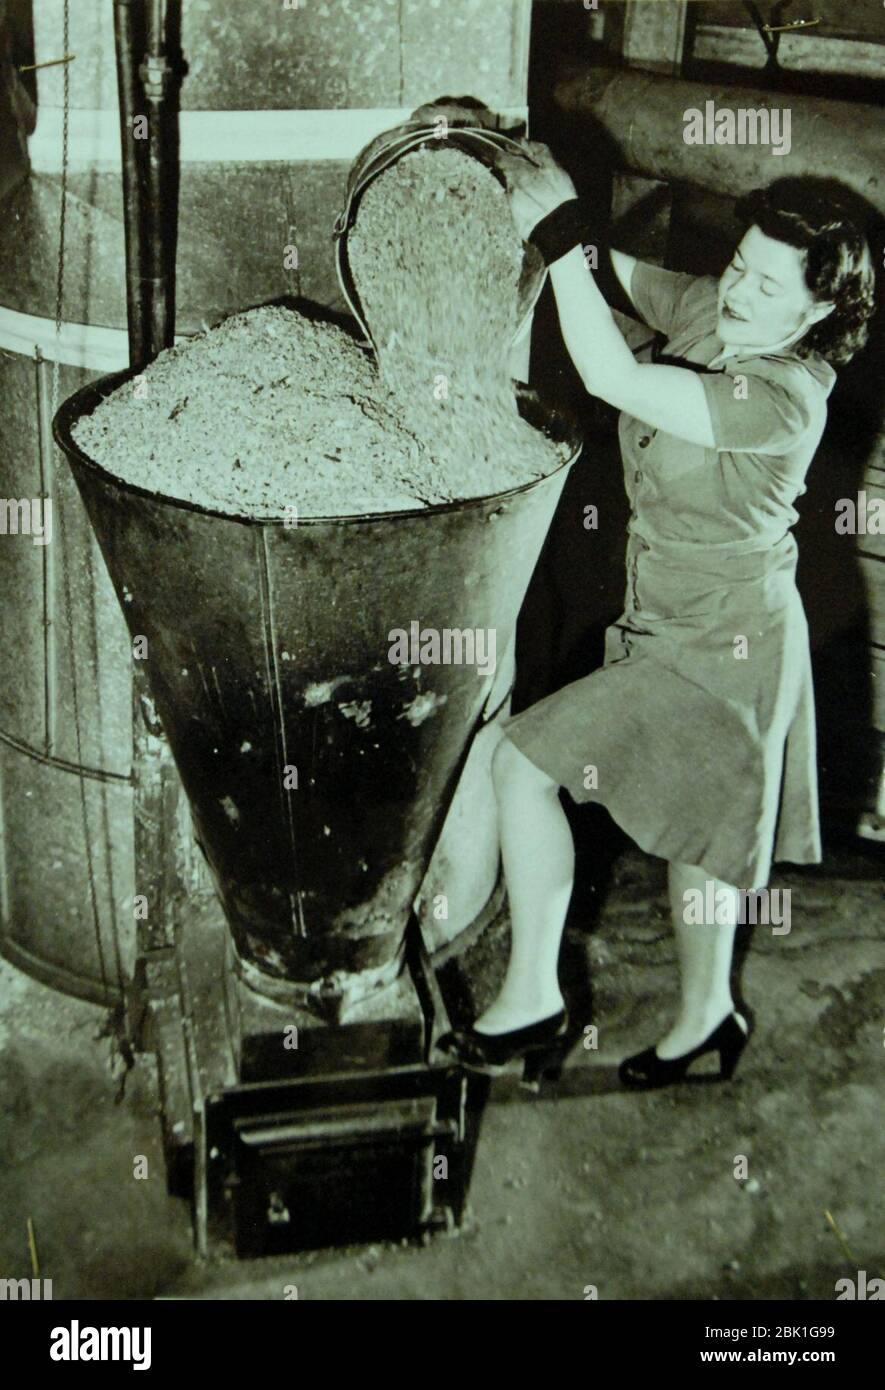 La esposa de la casa está llenando la tolva del quemador de aserrín de la  casa, 1942 (23681690775 Fotografía de stock - Alamy